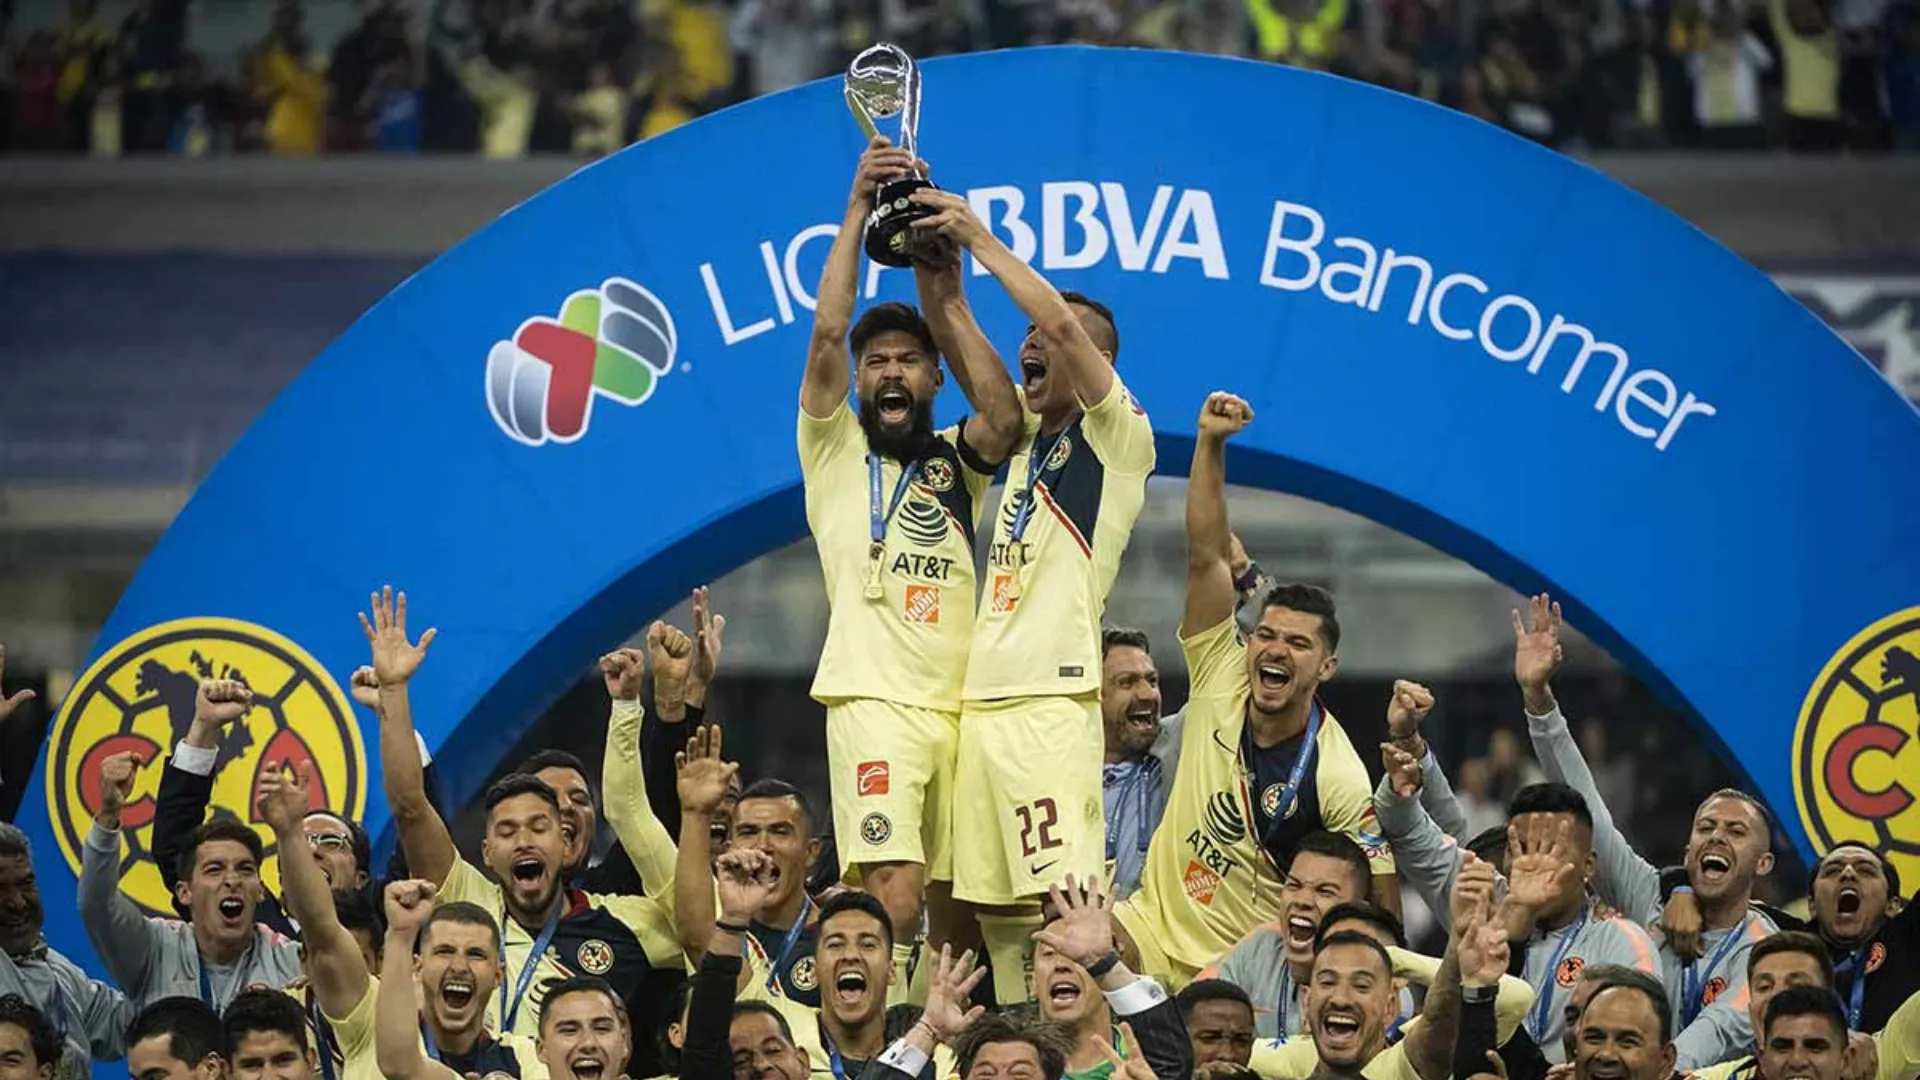 En México, ¿qué equipo ha ganado más títulos nacionales e internacionales?